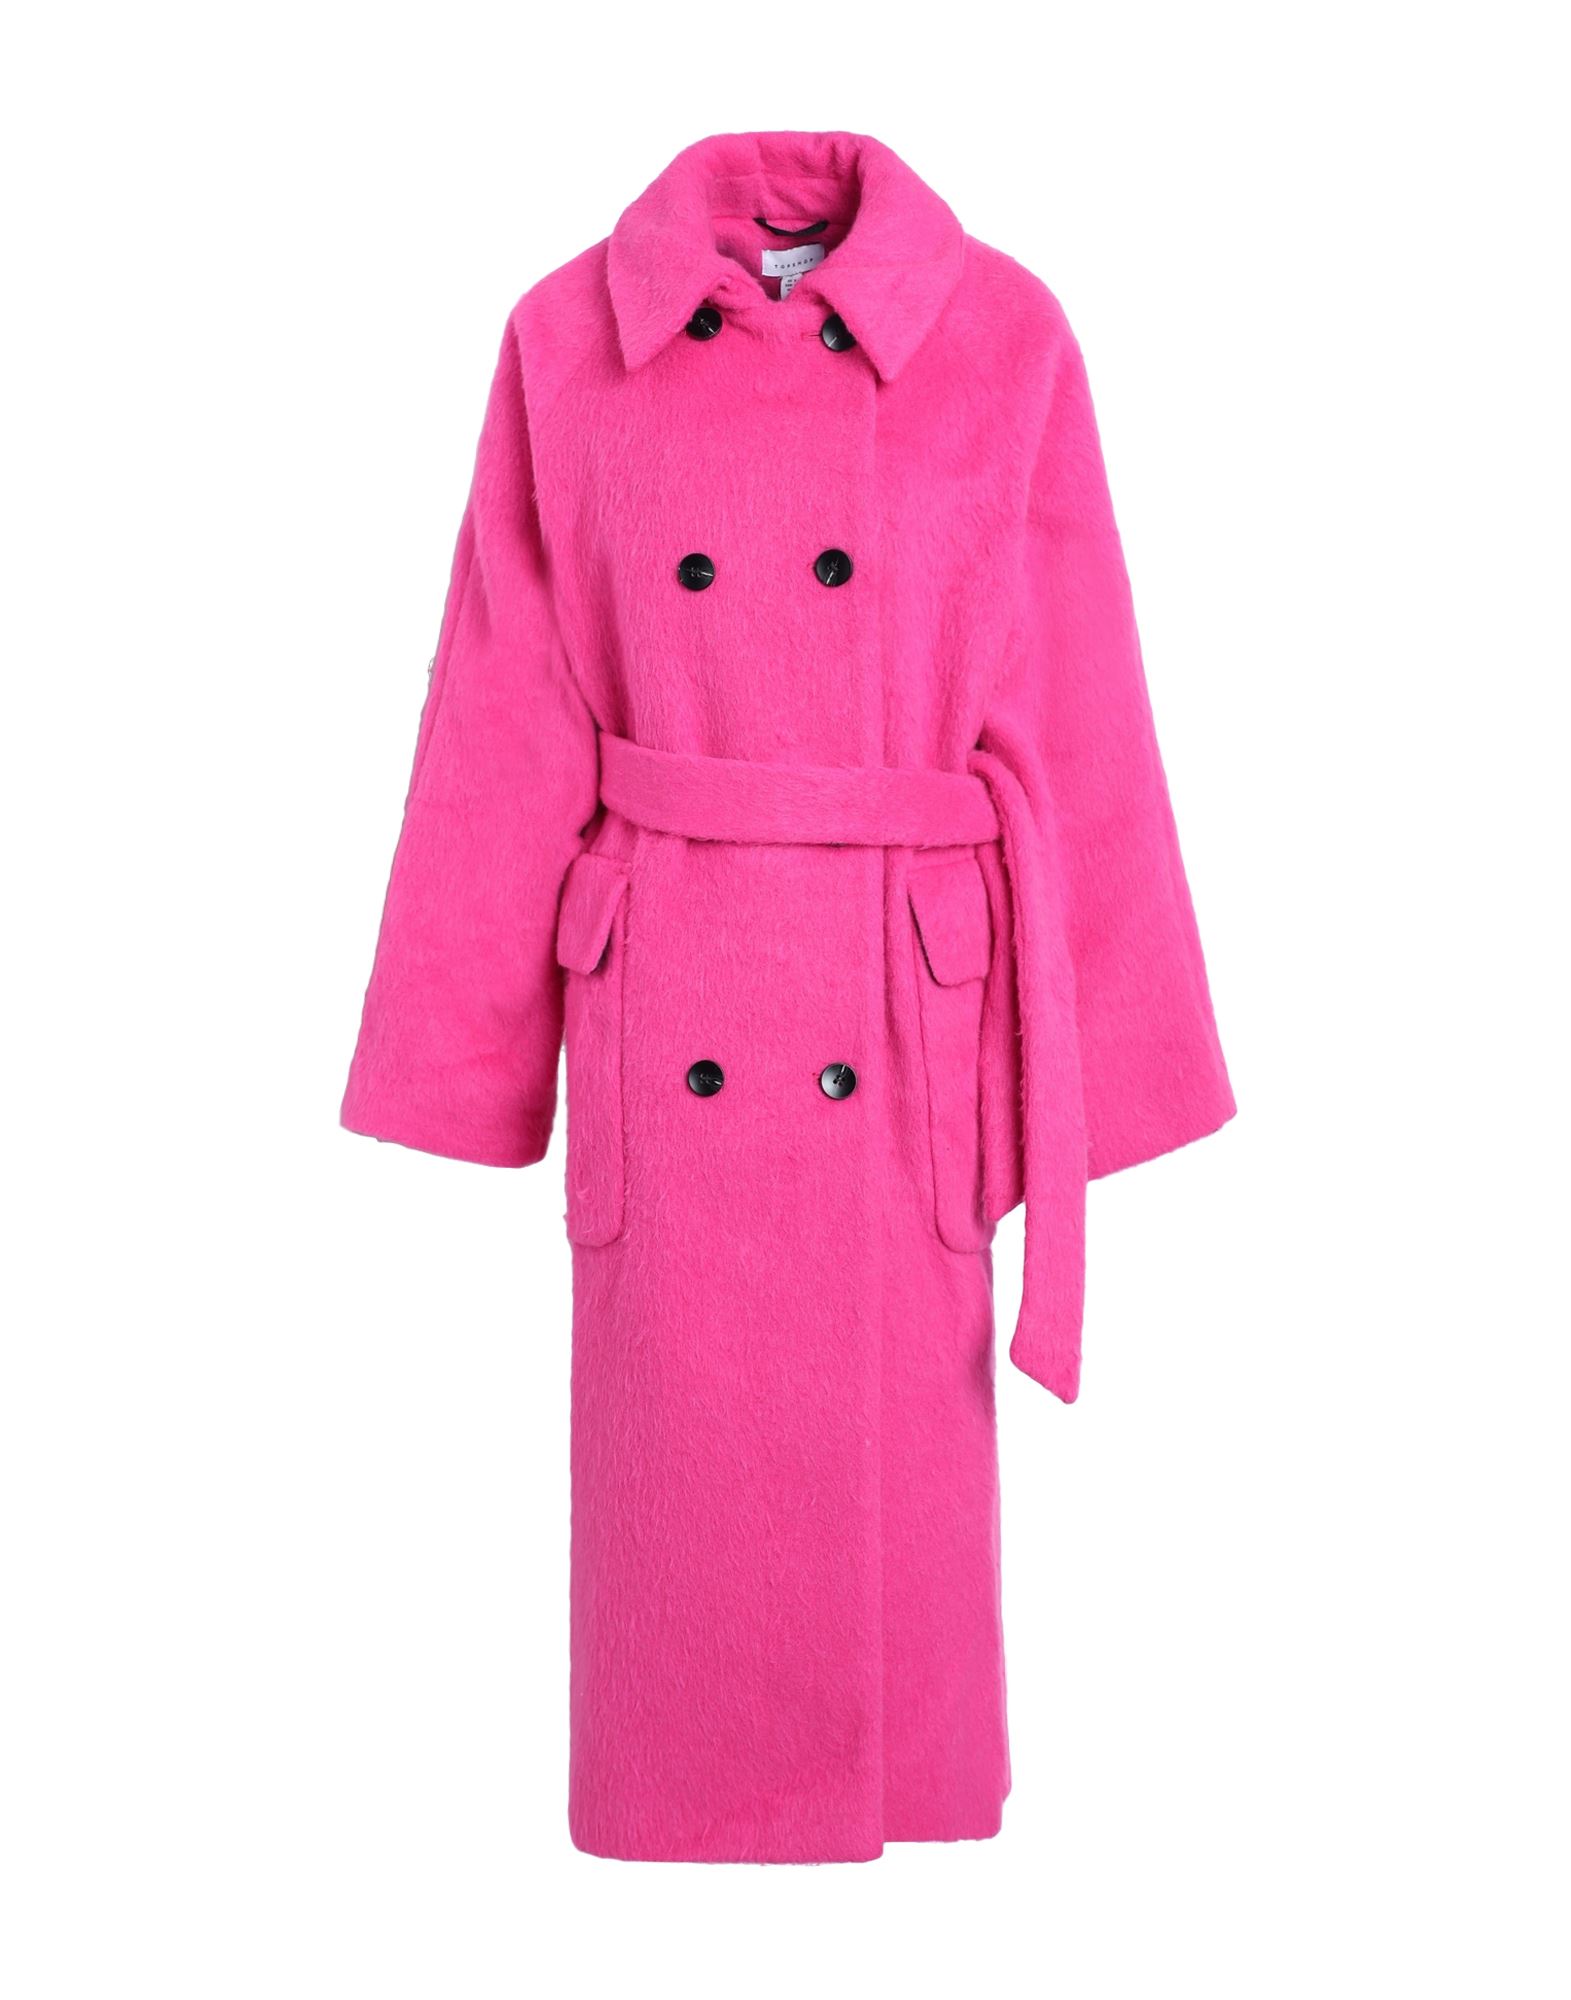 Topshop Coats In Pink